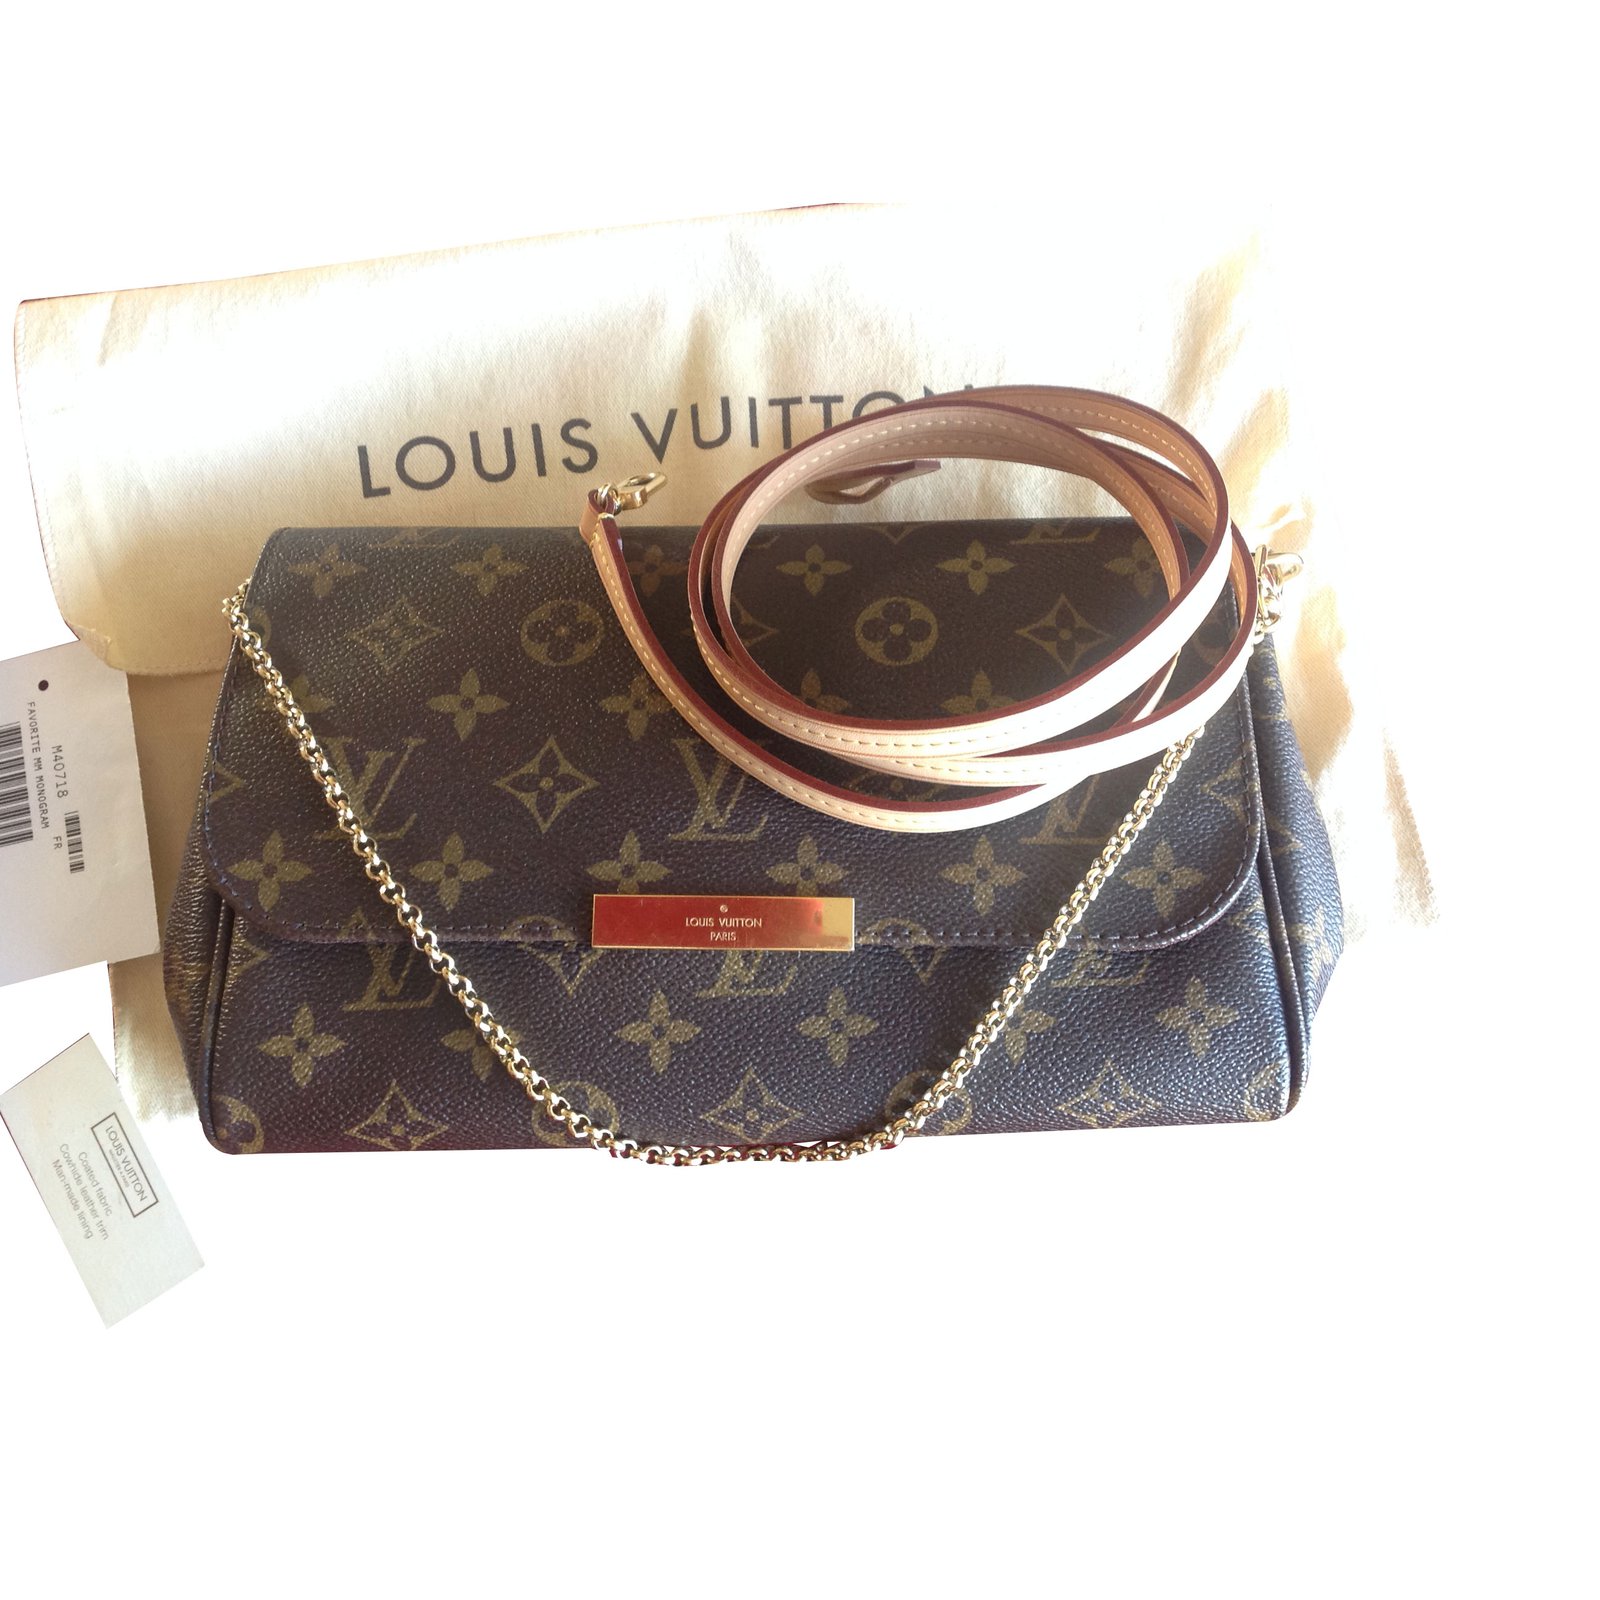 Favorite  Louis vuitton favorite, Louis vuitton favorite mm, Vintage louis  vuitton handbags